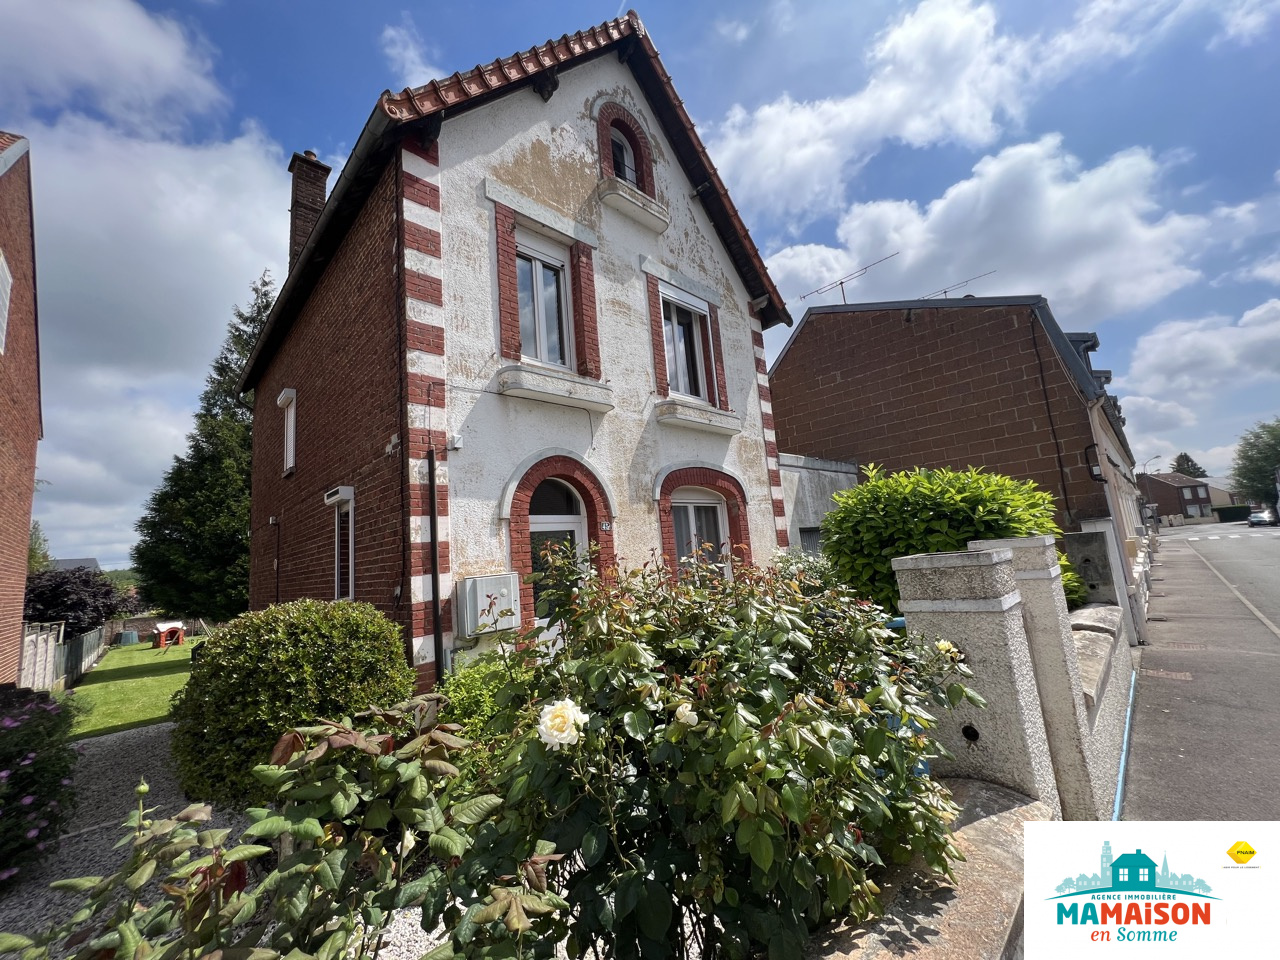 Immo80 – L'immobilier à Amiens et dans la Somme-Exclusivité, Albert, maison 96 m2, 5 pièces, 3 chambres, garage, jardin.